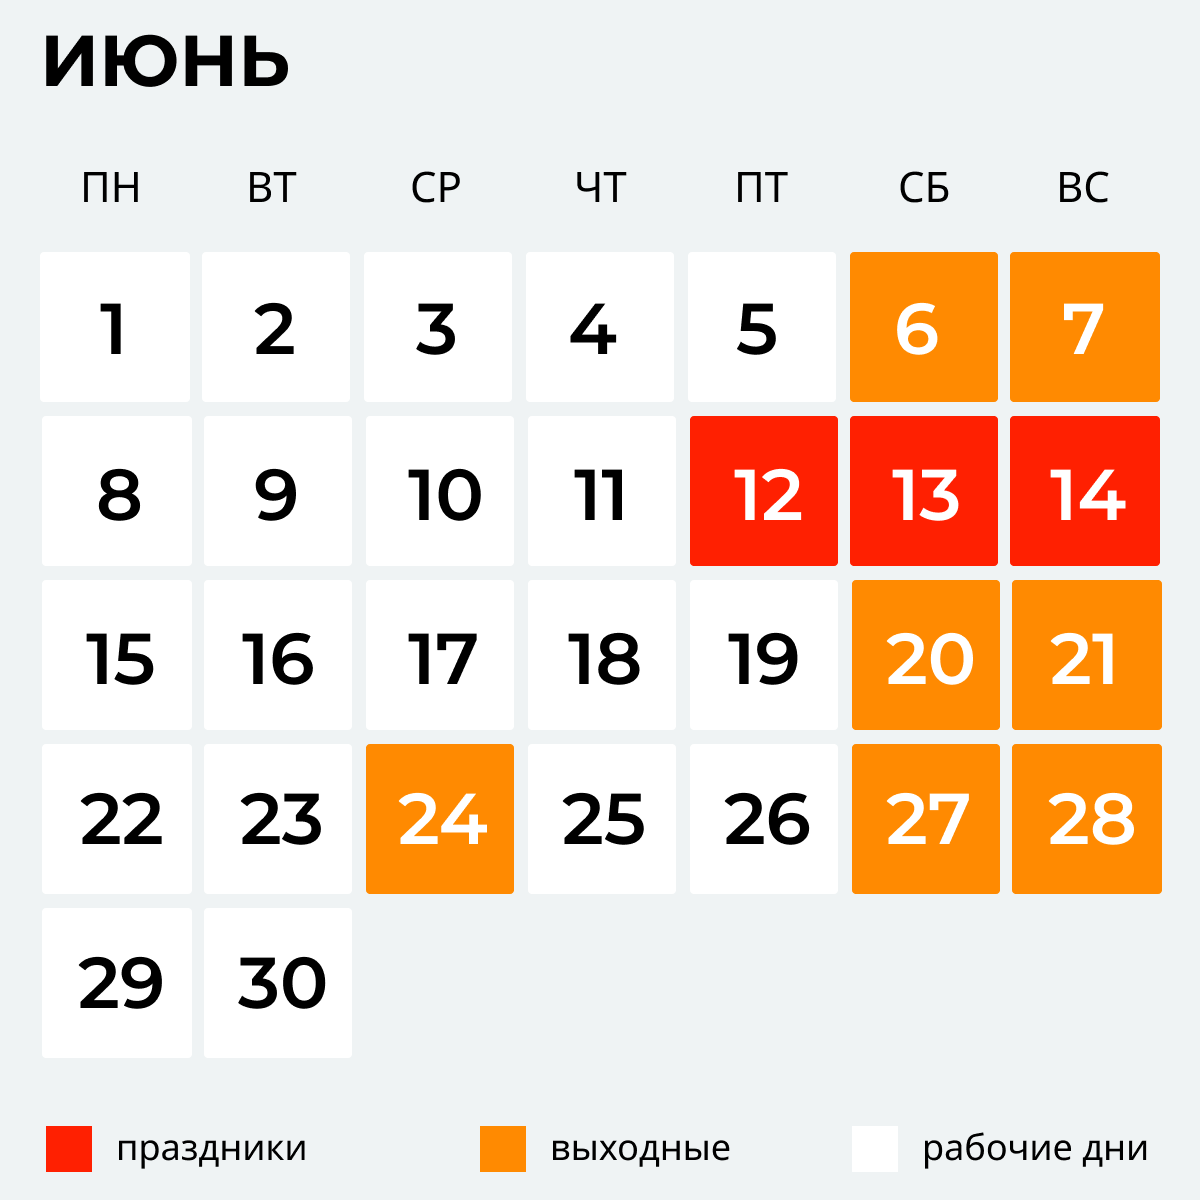 Выходный май. Праздники в июне. Календарь праздников на июнь. Выходные в июне. Нерабочие дни в июне.